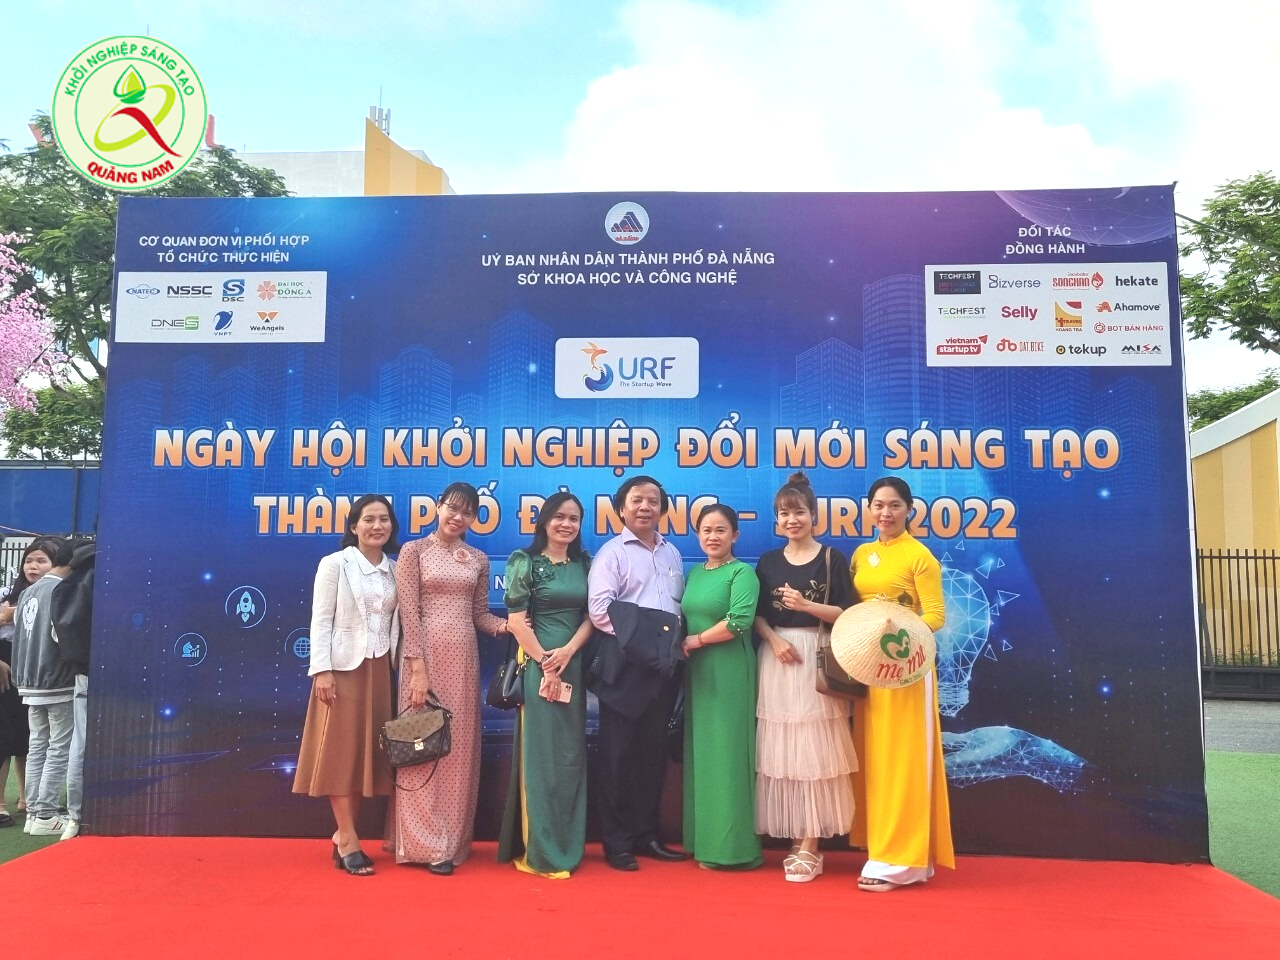 Cộng đồng khởi nghiệp Quảng Nam tham gia ngày hội SURF 2022 Đà Nẵng